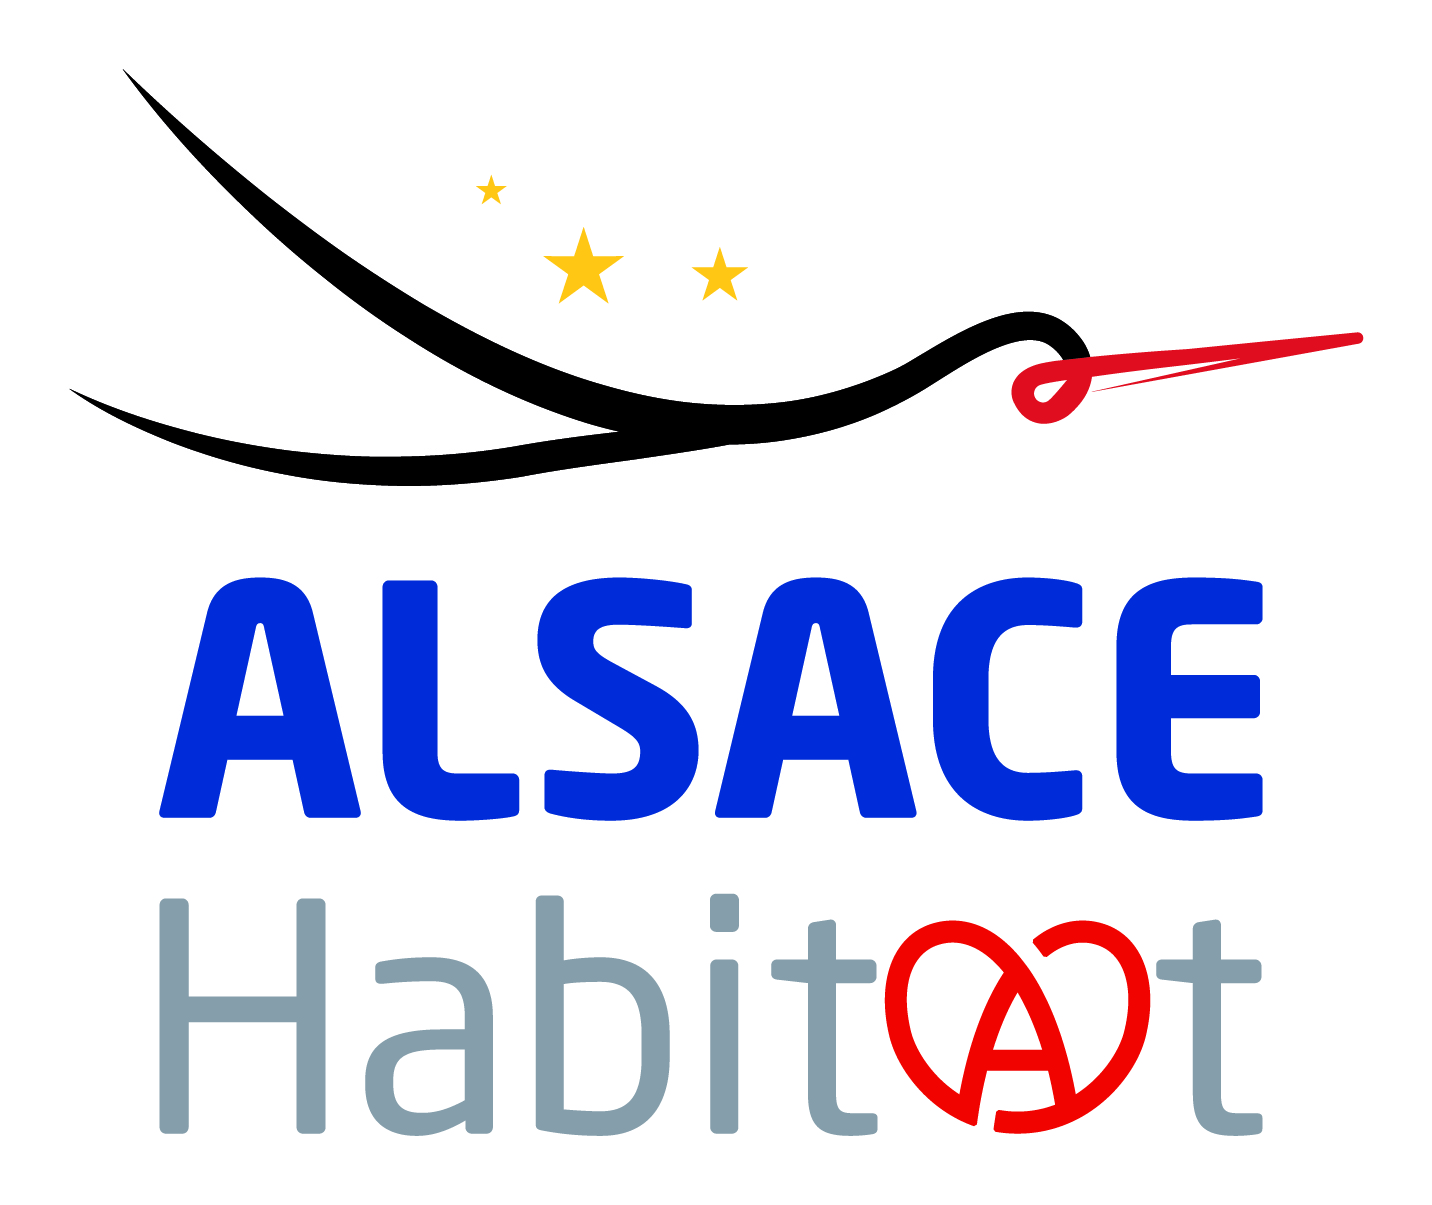 Alsace Habitat